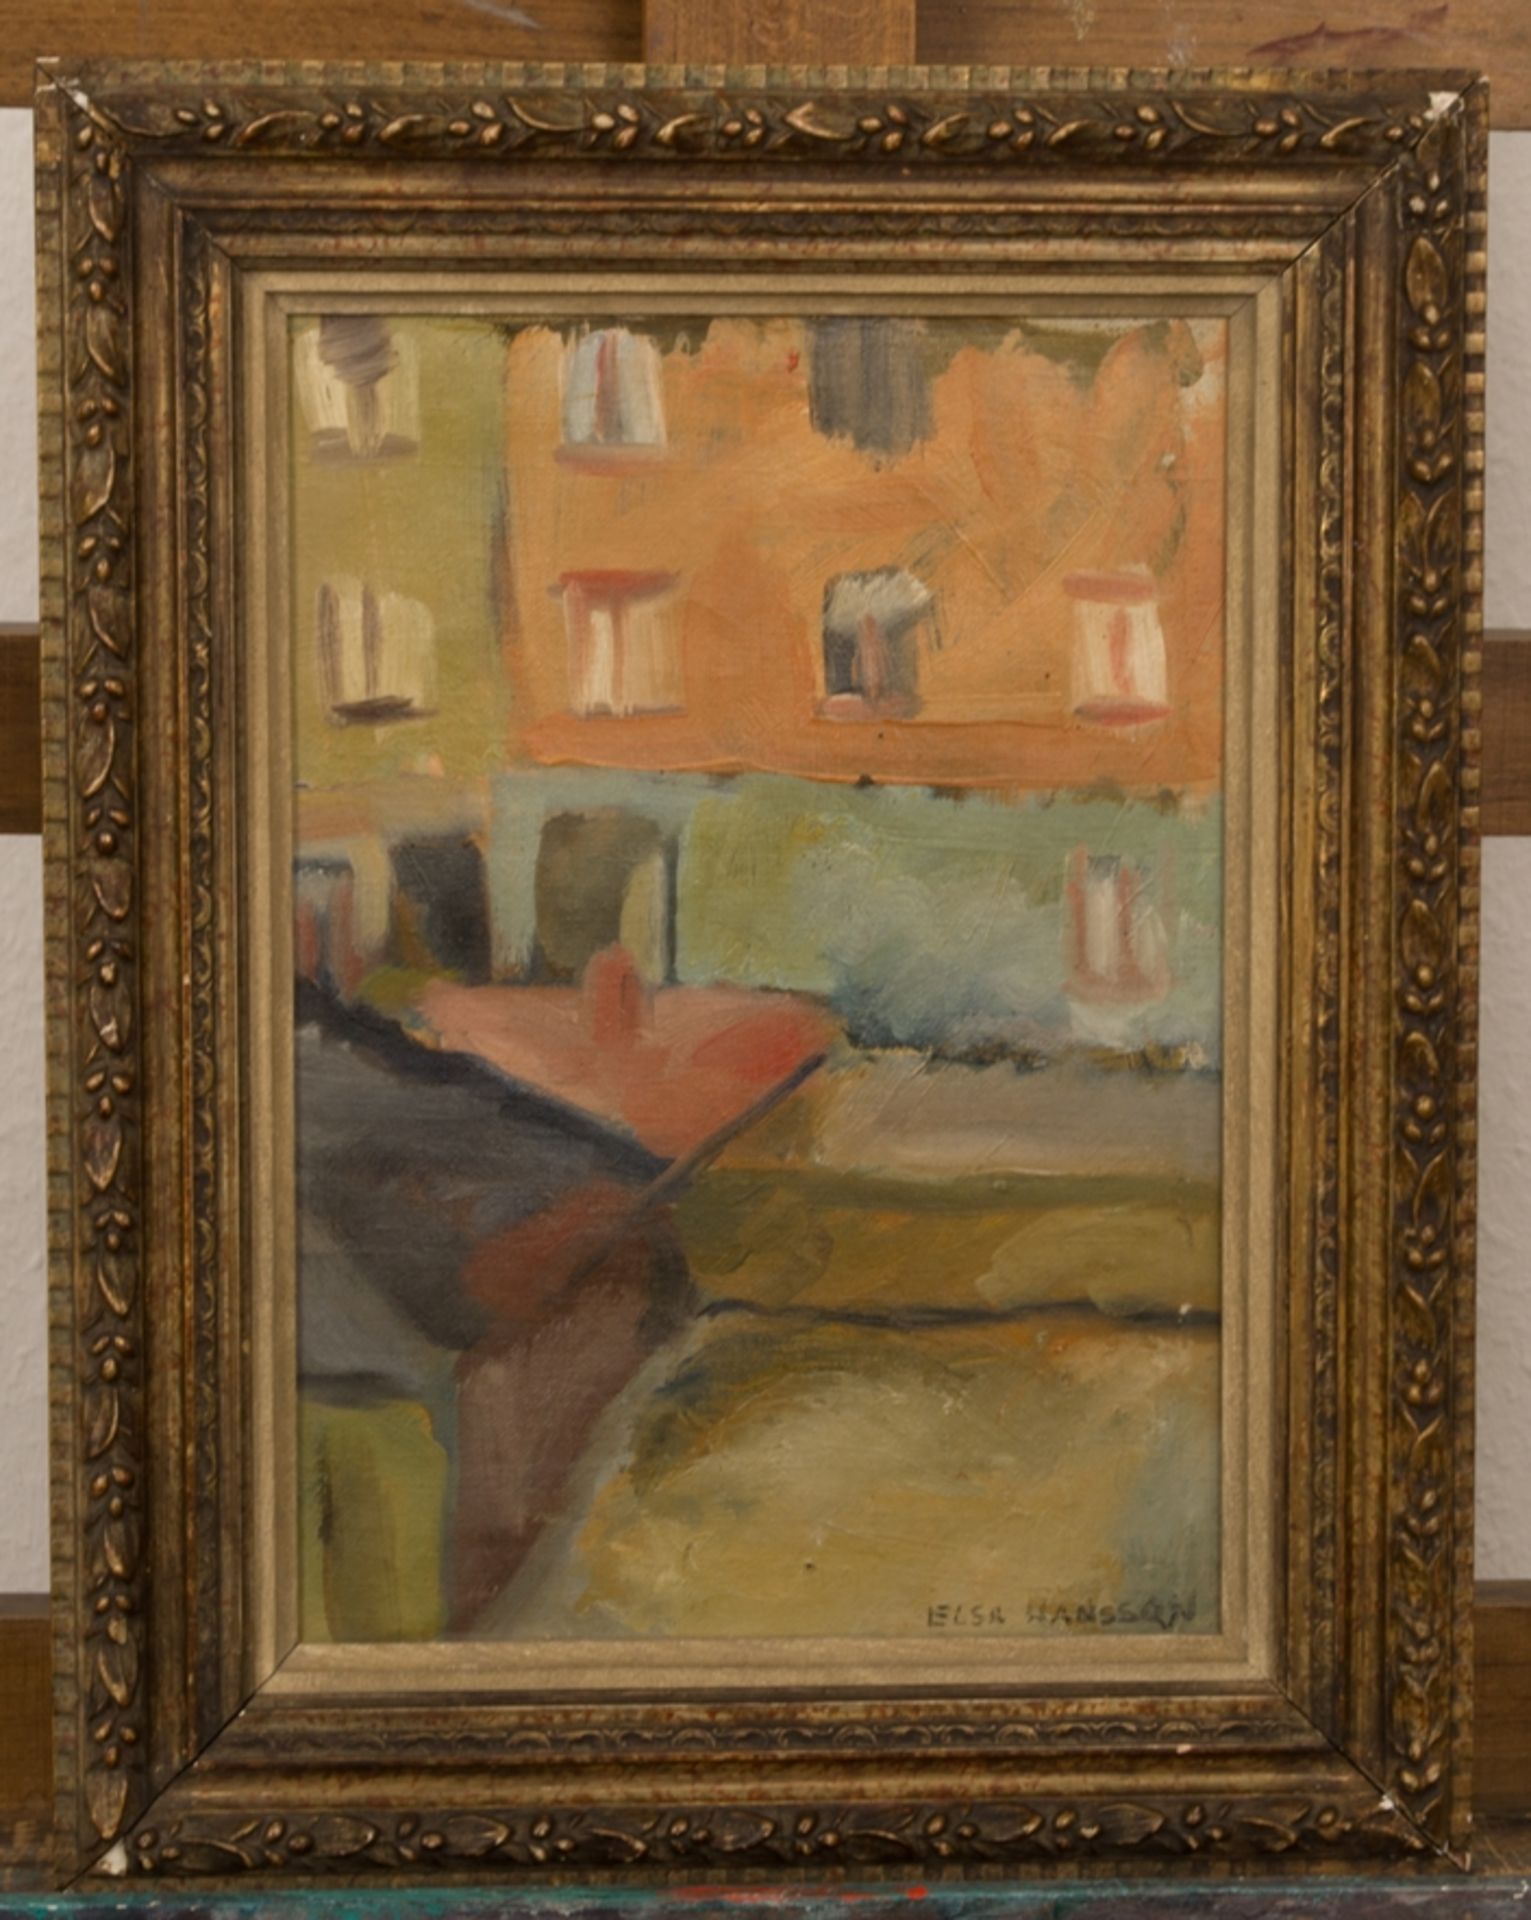 "Häuserdächer + Fassaden". Kleinformatiges Gemälde, Öl auf Leinwand, ca. 32 x 23 cm, der Elsa